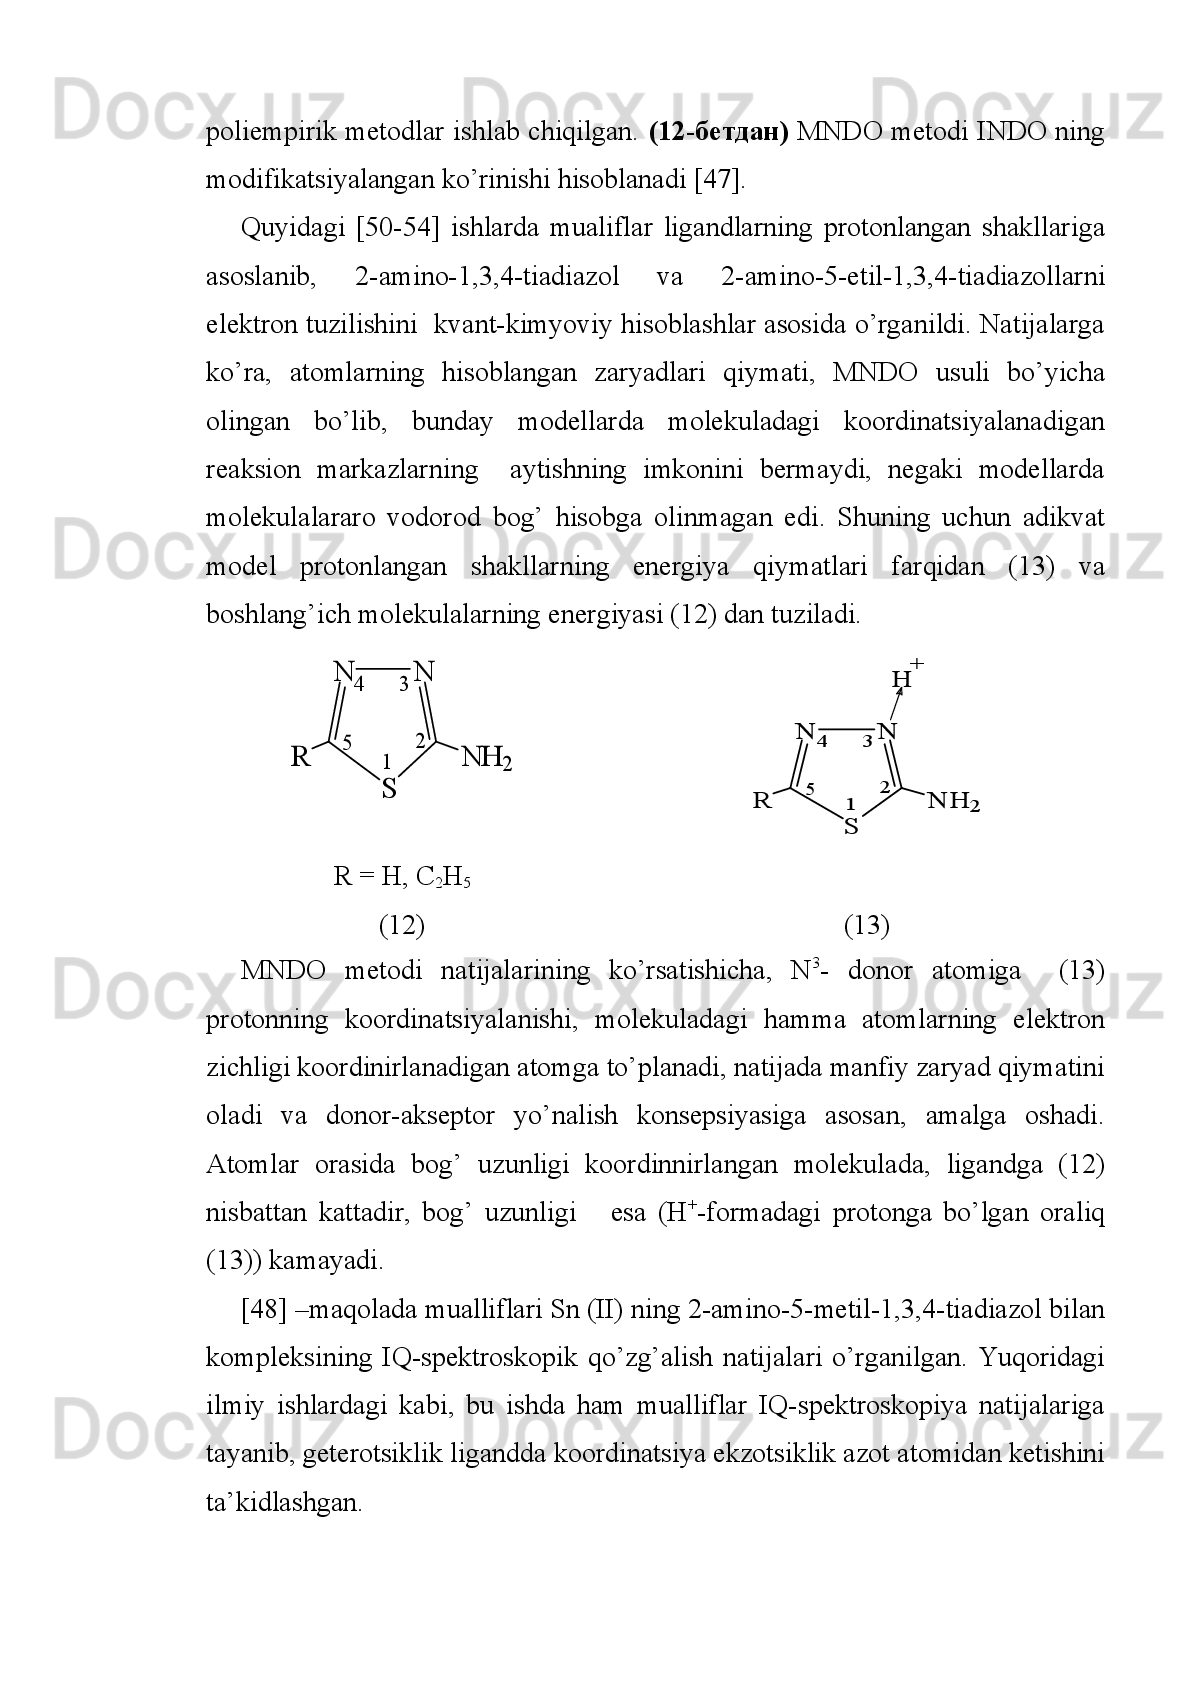 [44]-adabiyotda   рН-metriya,   YAM-relaksiya   uslublari   yordamida   Cu(II)
ning 3-amino-5-karboksi-1,2,4-triazol (H
2 L) bilan komplekslarining barqarorligi va
tarkibi   o’rganilgan.   Unga   ko’ra,   kislotali   neytral   muhitlarda   1:2   tarkibli
protonlangan   komplekslar,   ishqoriyda   esa   gidroksokomplekslar   hosil   bo’lishi
aniqlangan,   qattiq   holatda   Cu(HL)
2  2H
2 O   va   Cu(HL)OH  H
2 O   tarkibli
komplekslar   ajratib   olingan.   EPR   uslubi   yordamida   ekvatoryal   tekislikda
joylashgan, ligandlar o’rtasidagi oktaedr xelatlarning tuzilishi o’rganilgan.
Bunday sistemalarda ahamiyatli jihati Cu(II) ning kuchli kislotali sohalarda
komplekslar hosil qilishidir.
[47]   mualliflar   tomonidan   3-metil-1,2,4-triazol-tiol-5   ning   oksidlanish-
qaytarilishi   ligand   elektrodning   yordamchi   platina   elektrodidagi   273-338   К
temperatura oralig’ida qaytarligi o’rganilgan. Ishlab chiqilgan elektrod ishtirokida
reniy   (V)   ning   kompleks   hosil   qilishi   6Н   vodorod   xloridda   turli   temperatura
oralig’ida   o’rganilgan.   Potensiometrik   uslubda   topilgan   barqarorlik   konstantasi
qiymatlari spektrofotometrik uslub natijalari orqali tasdiqlangan. 
[48]   qator   mualliflar   tomonidan   batre-bis-1,1/-(4-amino-1,2,4-triazoliltio)-
etan   tipidagi   yangi   kompleks   birikma   sintez   qilingan.   Kompleks   hosil   bo’lish
reaksiyasini   kislotali   muhitda   olib   borilgan.   Kompleks   birikma   tuzilishini
rentgenstruktur   analiz   yordamida   o’rganilgan.   Natijalarga   ko’ra,   kompleks   hosil
bo’lishida   ligandlar   boshqa   mis   tutgan   fragmentlarga   bidentant-ko’prikli   shaklda
koordinirlanishi aniqlangan.
1,2,3-triazol   va   bis-1,2,3-triazol   hosilalari   o’simliklarni   o’stiruvchanlik
xossasiga ega ekanligi hamda  yuqori biologik faolikni namoyon qiluvchanligi [49]
adabiyotda o’rganilgan.
Hozirgi   kunda   kvant-kimyoviy   hisoblash   usullari   moddalarning   elektron
tuzilishini   o’rganish   uchun   eng   muhim   va   qulay   usul   hisoblanadi.   Kvan-kimyo
asosida   murakkab   tuzilishga   ega   bo’lgan   moddalarning   elektron   tuzilishini
o’rganish   mumkin.   Shuningdek   kvant-kimyoviy   hisoblashlari   asosida
polifunksional   ligandlarning   koordinatsiyaga   uchraydigan   raqobatdosh   donor
markazlarni oldindan aytib berish imkonini beradi. Yuqoridagilarni inobatga olib, 